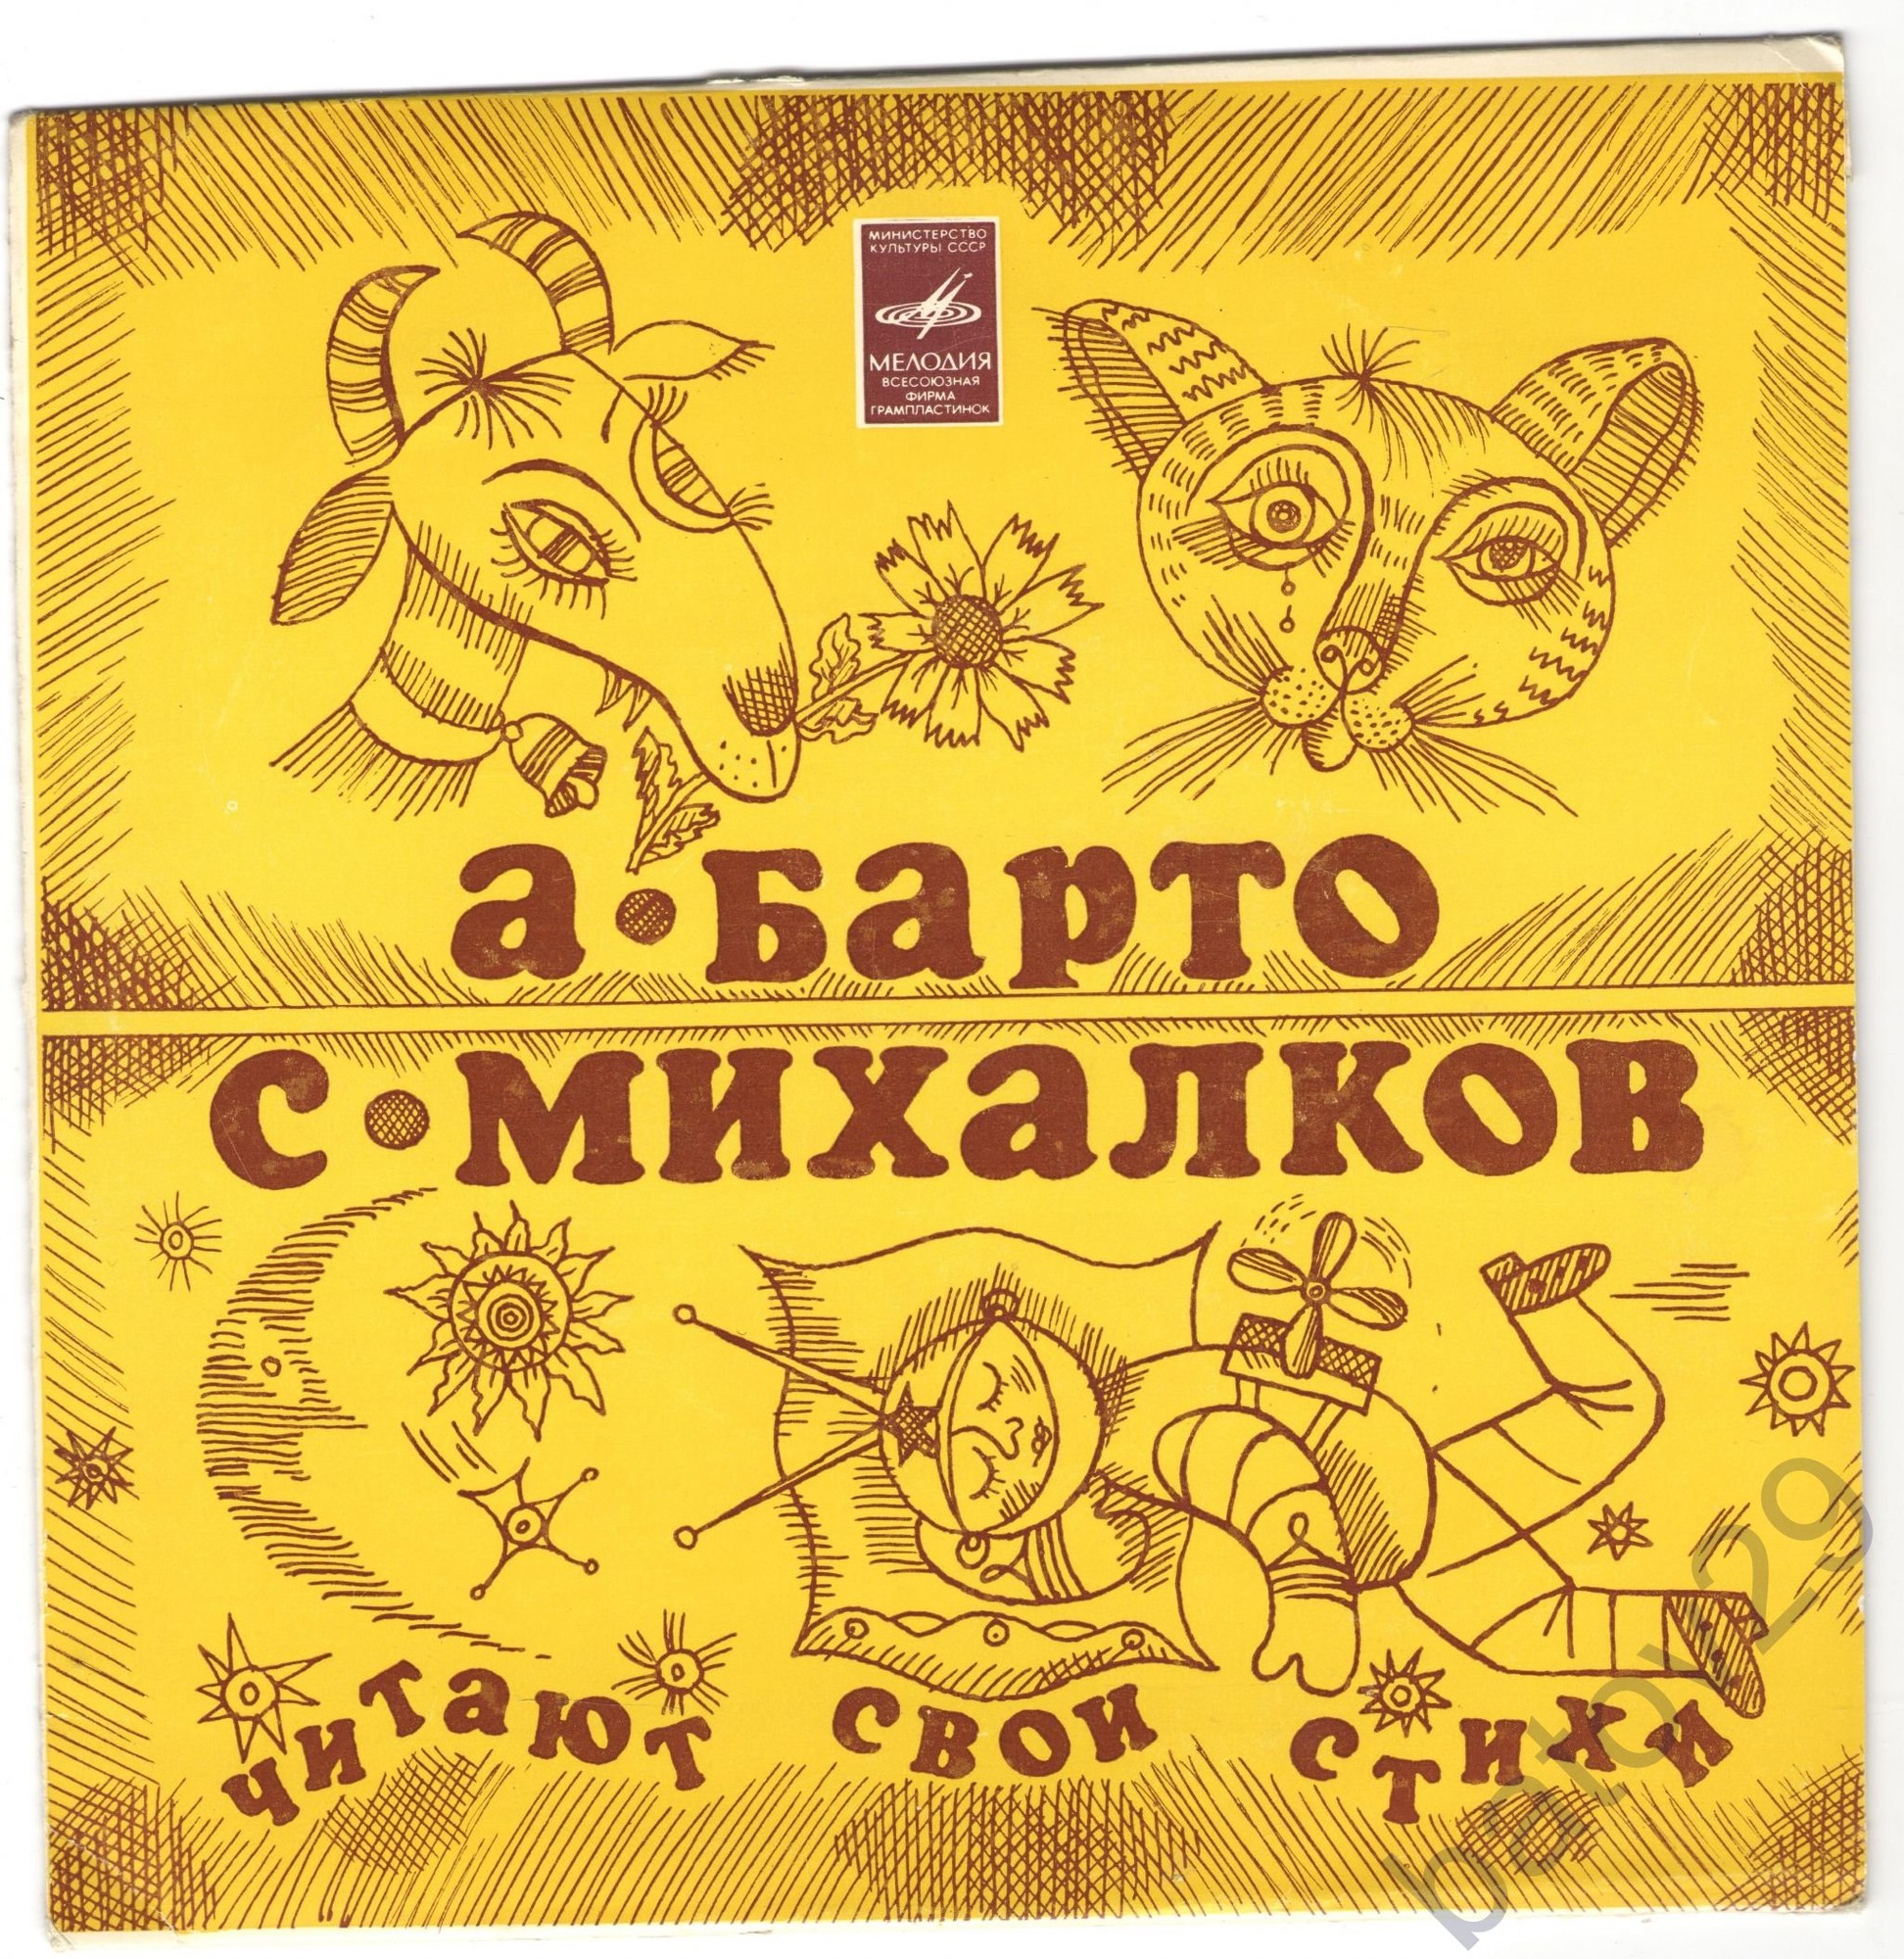 А. Барто и С. Михалков читают свои стихи